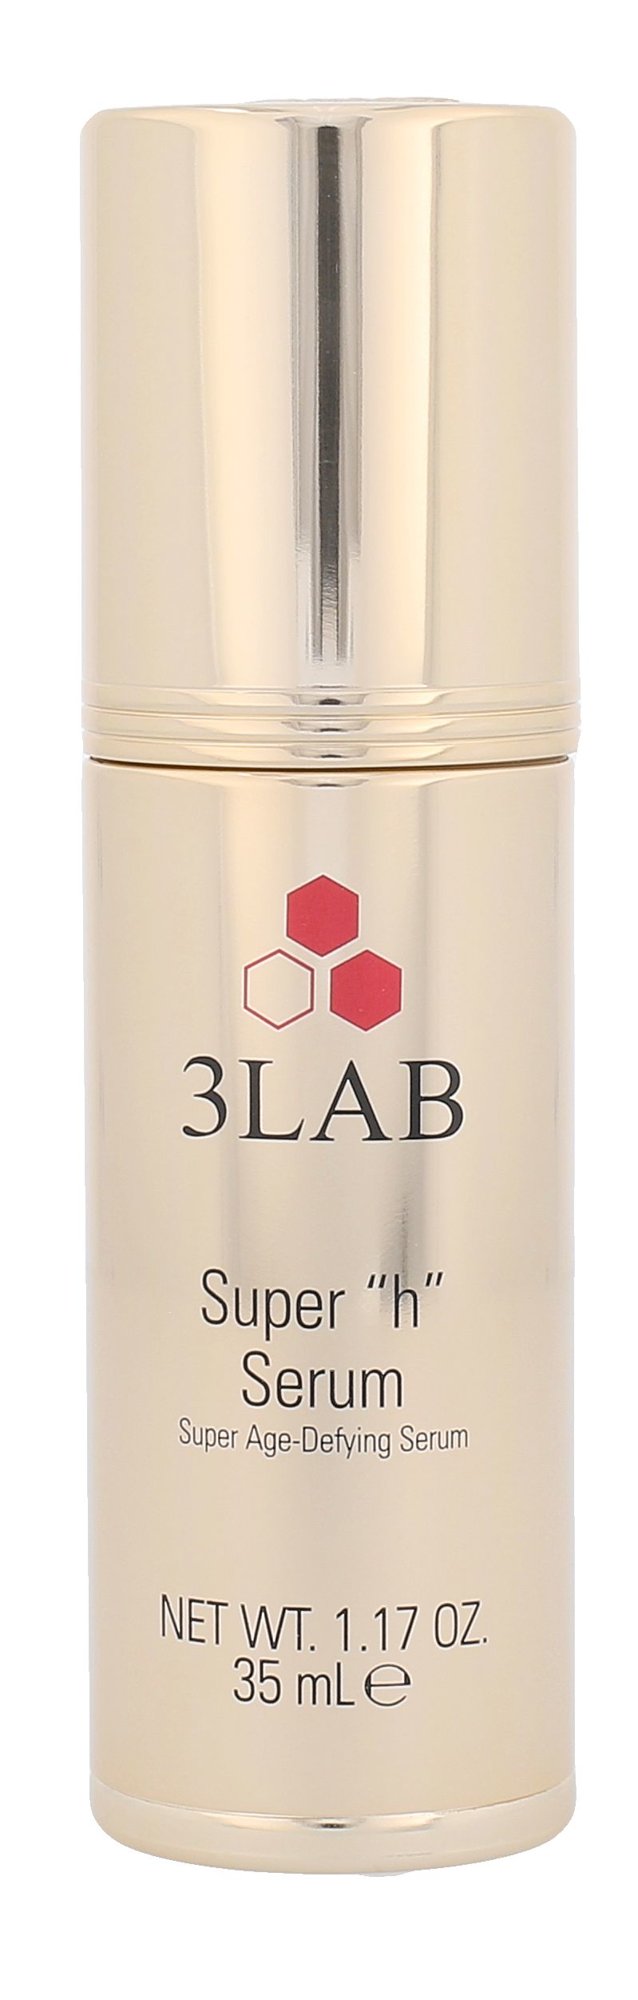 3LAB Super H Serum